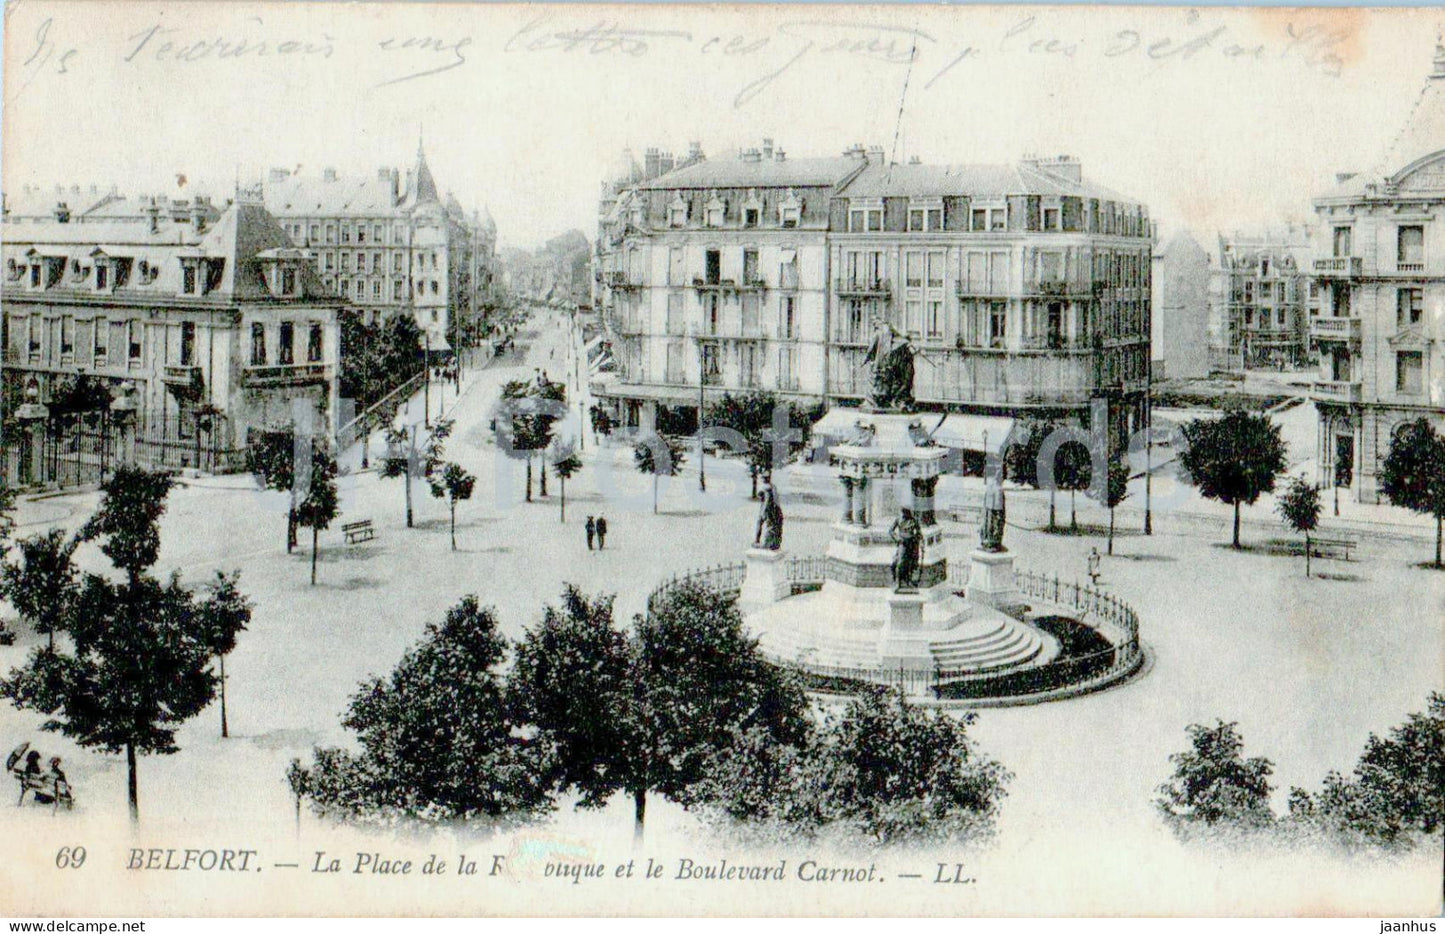 Belfort - La Place de la Republique et le Boulevard Carnot - military mail - 69 - 1915 - old postcard - France - used - JH Postcards